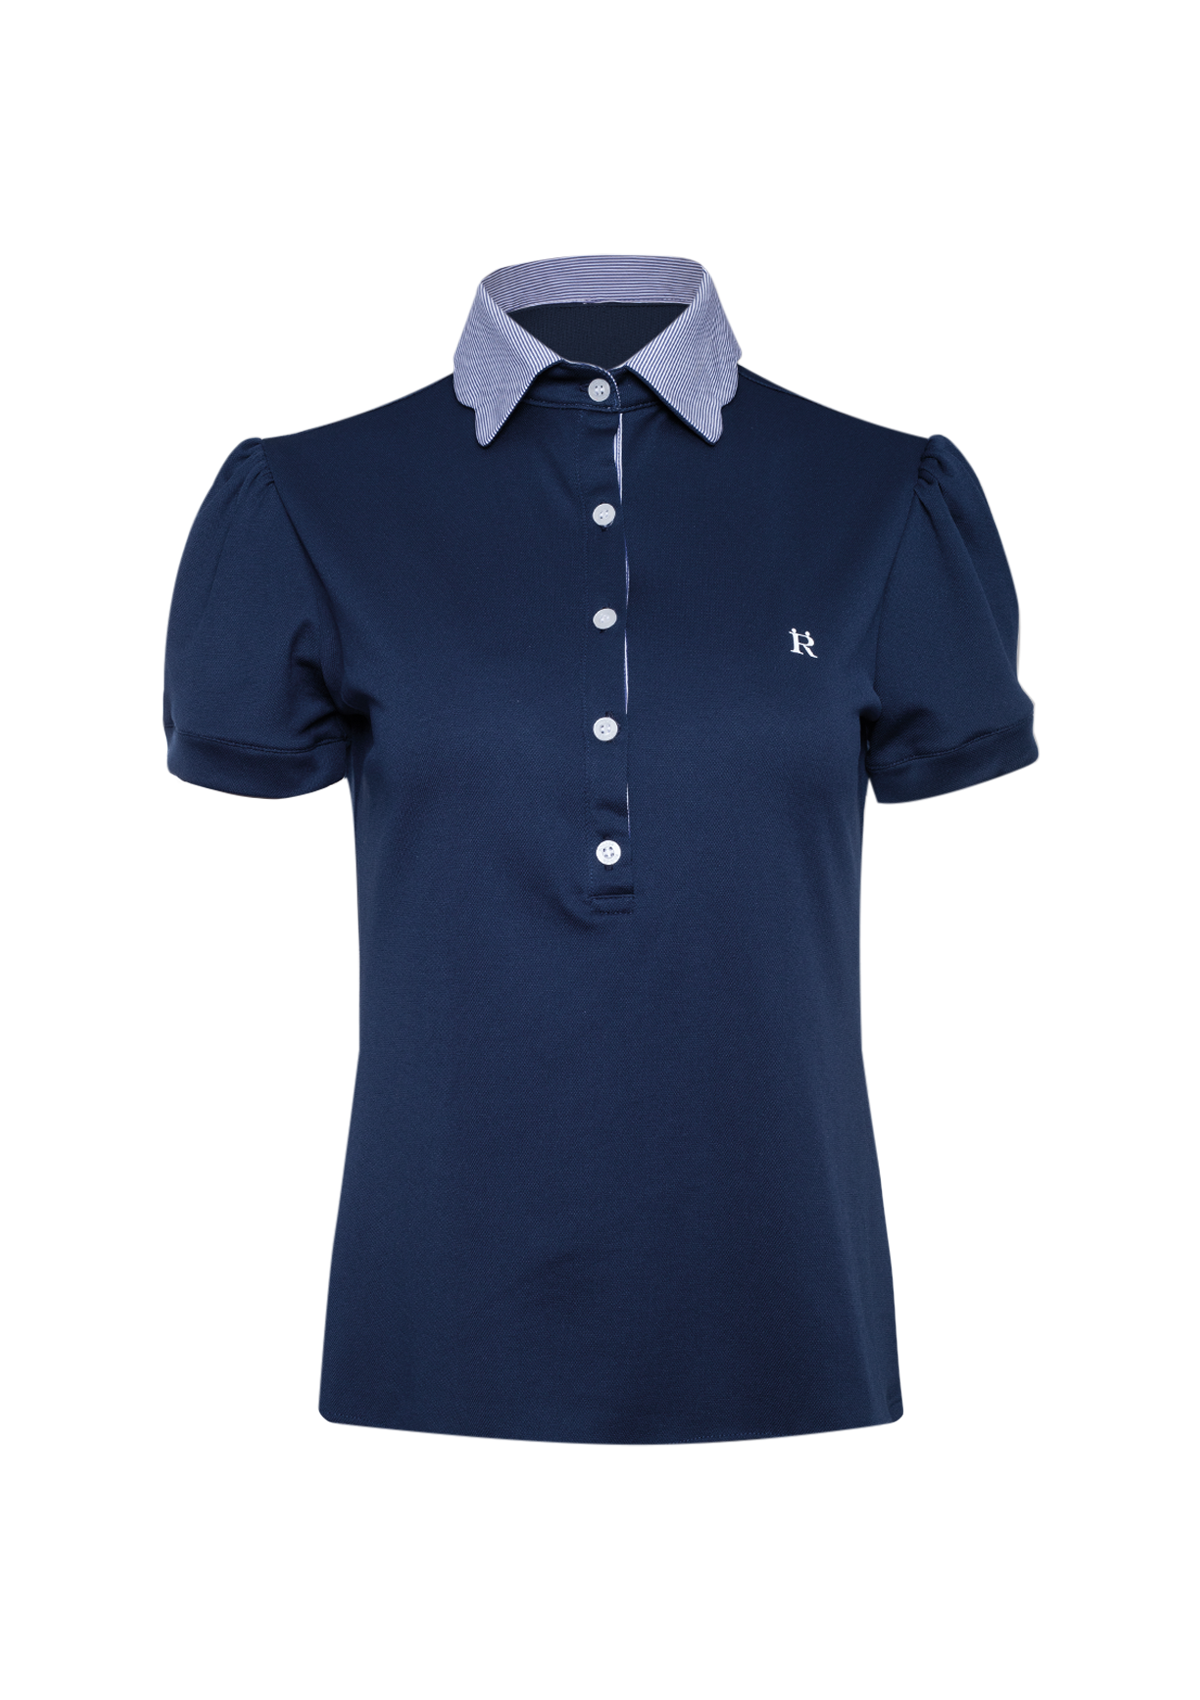 Acasia Polo-Shirt | Navy Pinstriped | High Tech - Rönner